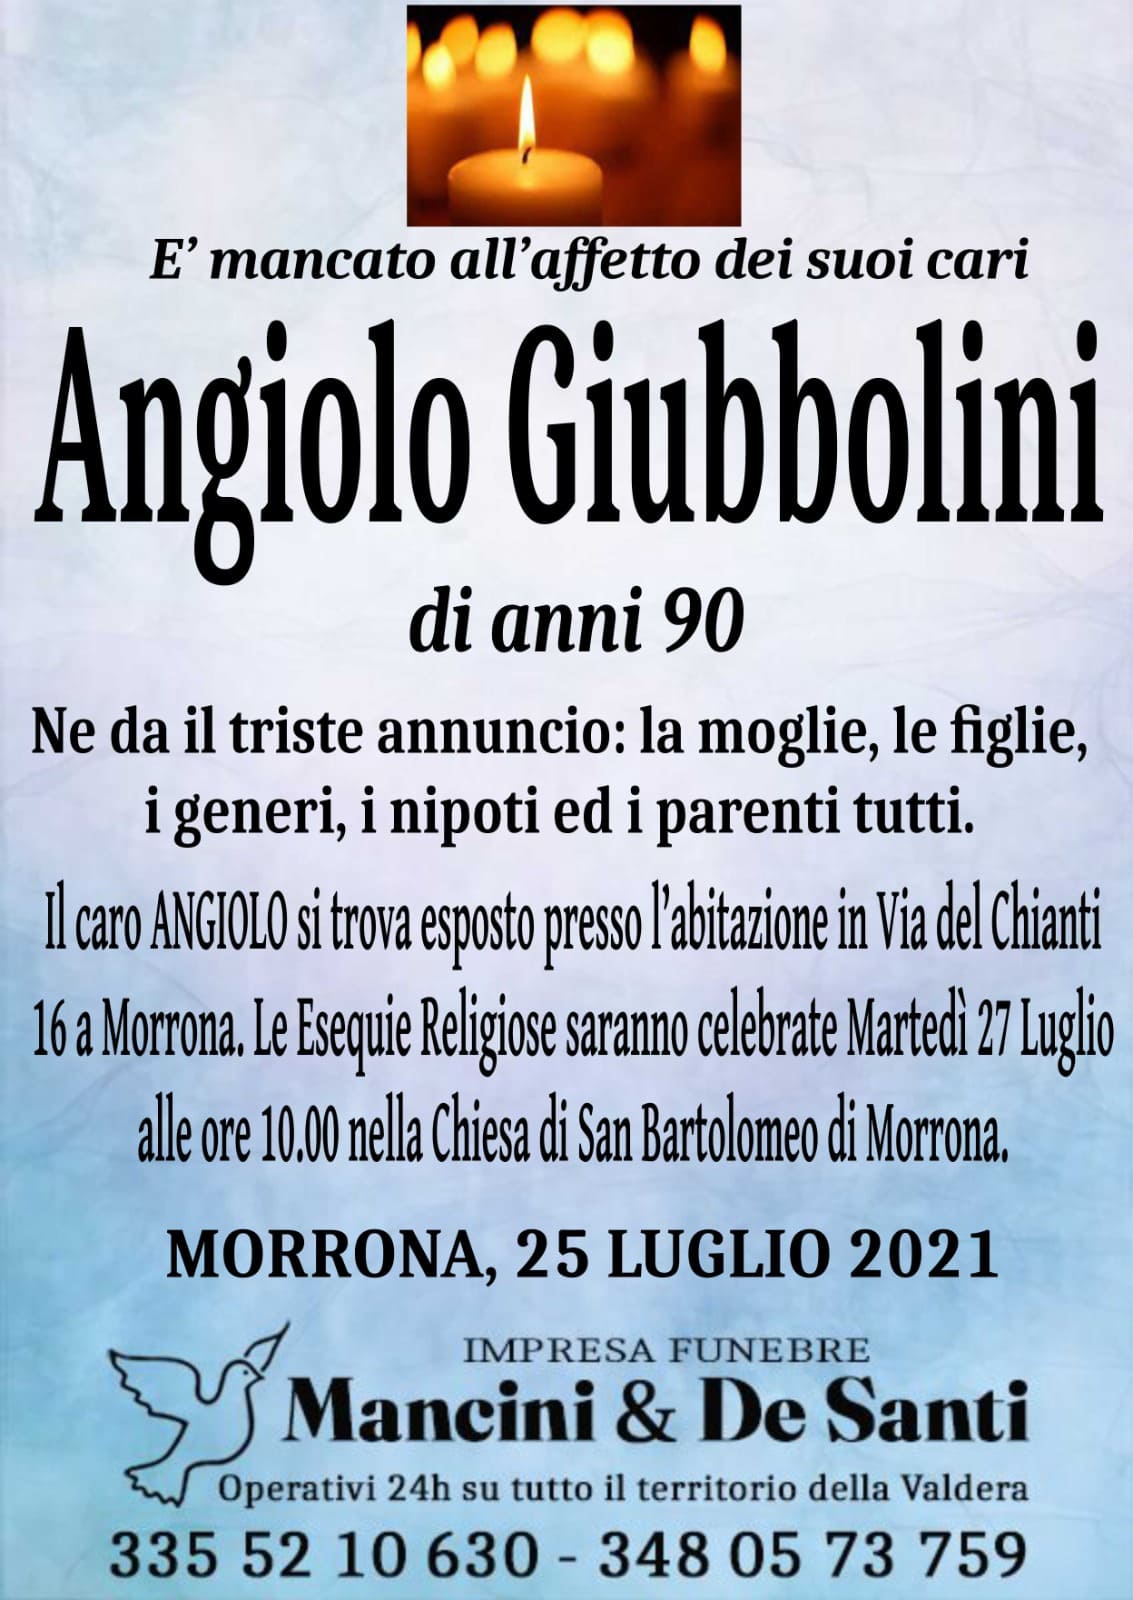 Nercologio Angiolo Giubbolini - anni 90 - funerale Morrona - martedì 27 luglio ore 10.00 - Chiesa San Bartolomeo di Morrona